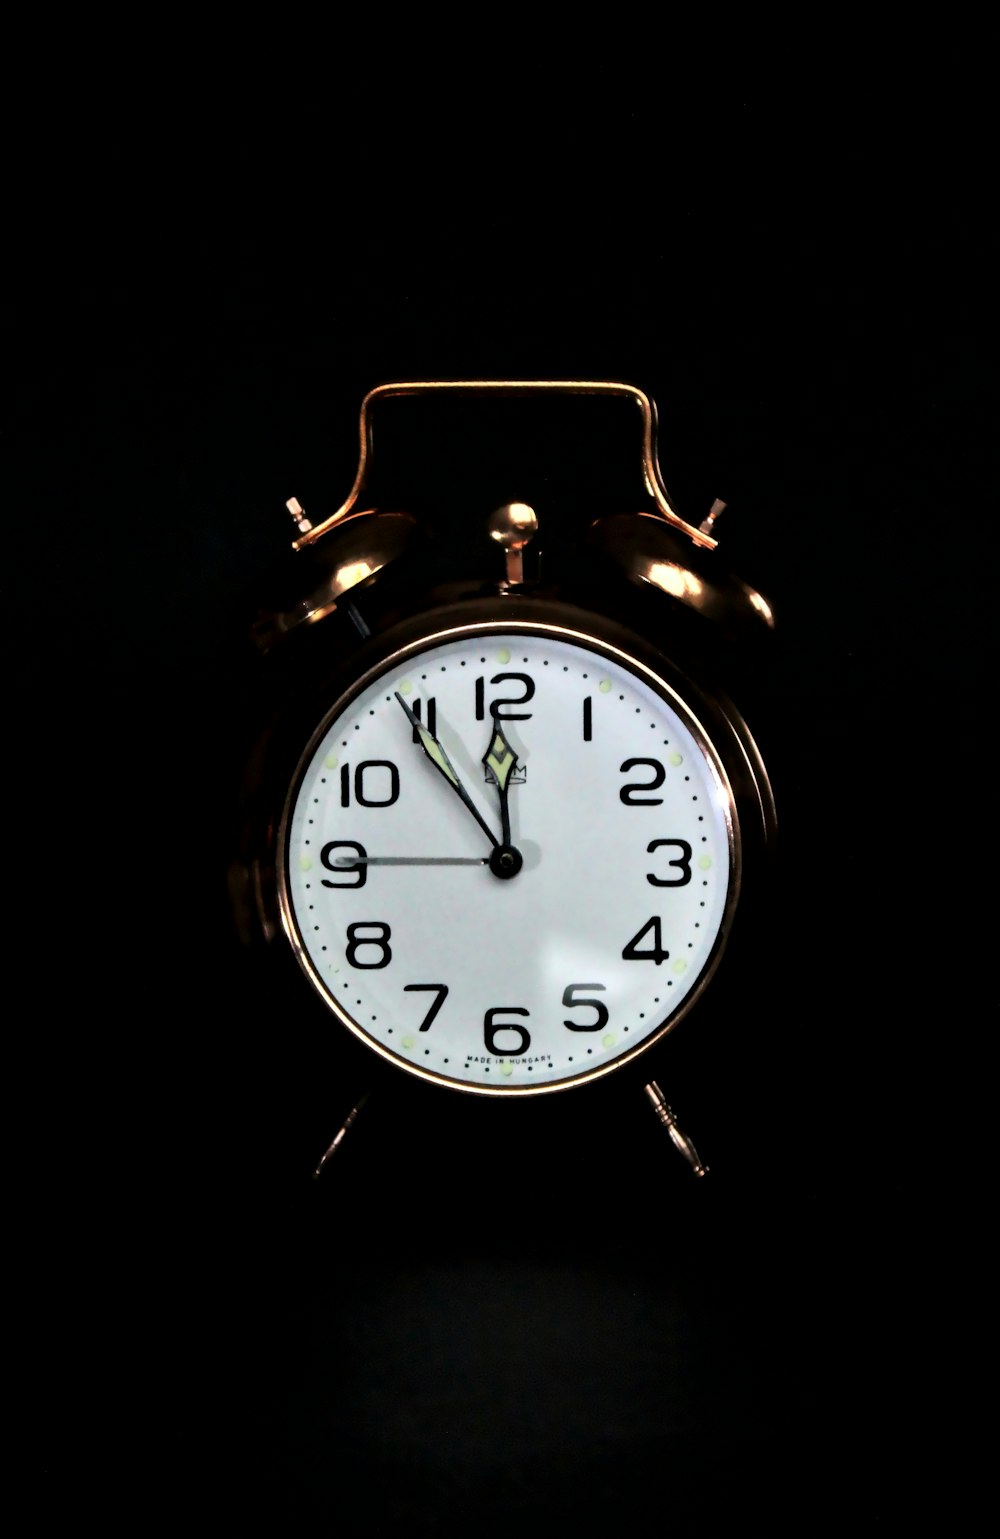 50,000+ Vintage Clock Pictures  Download Free Images on Unsplash